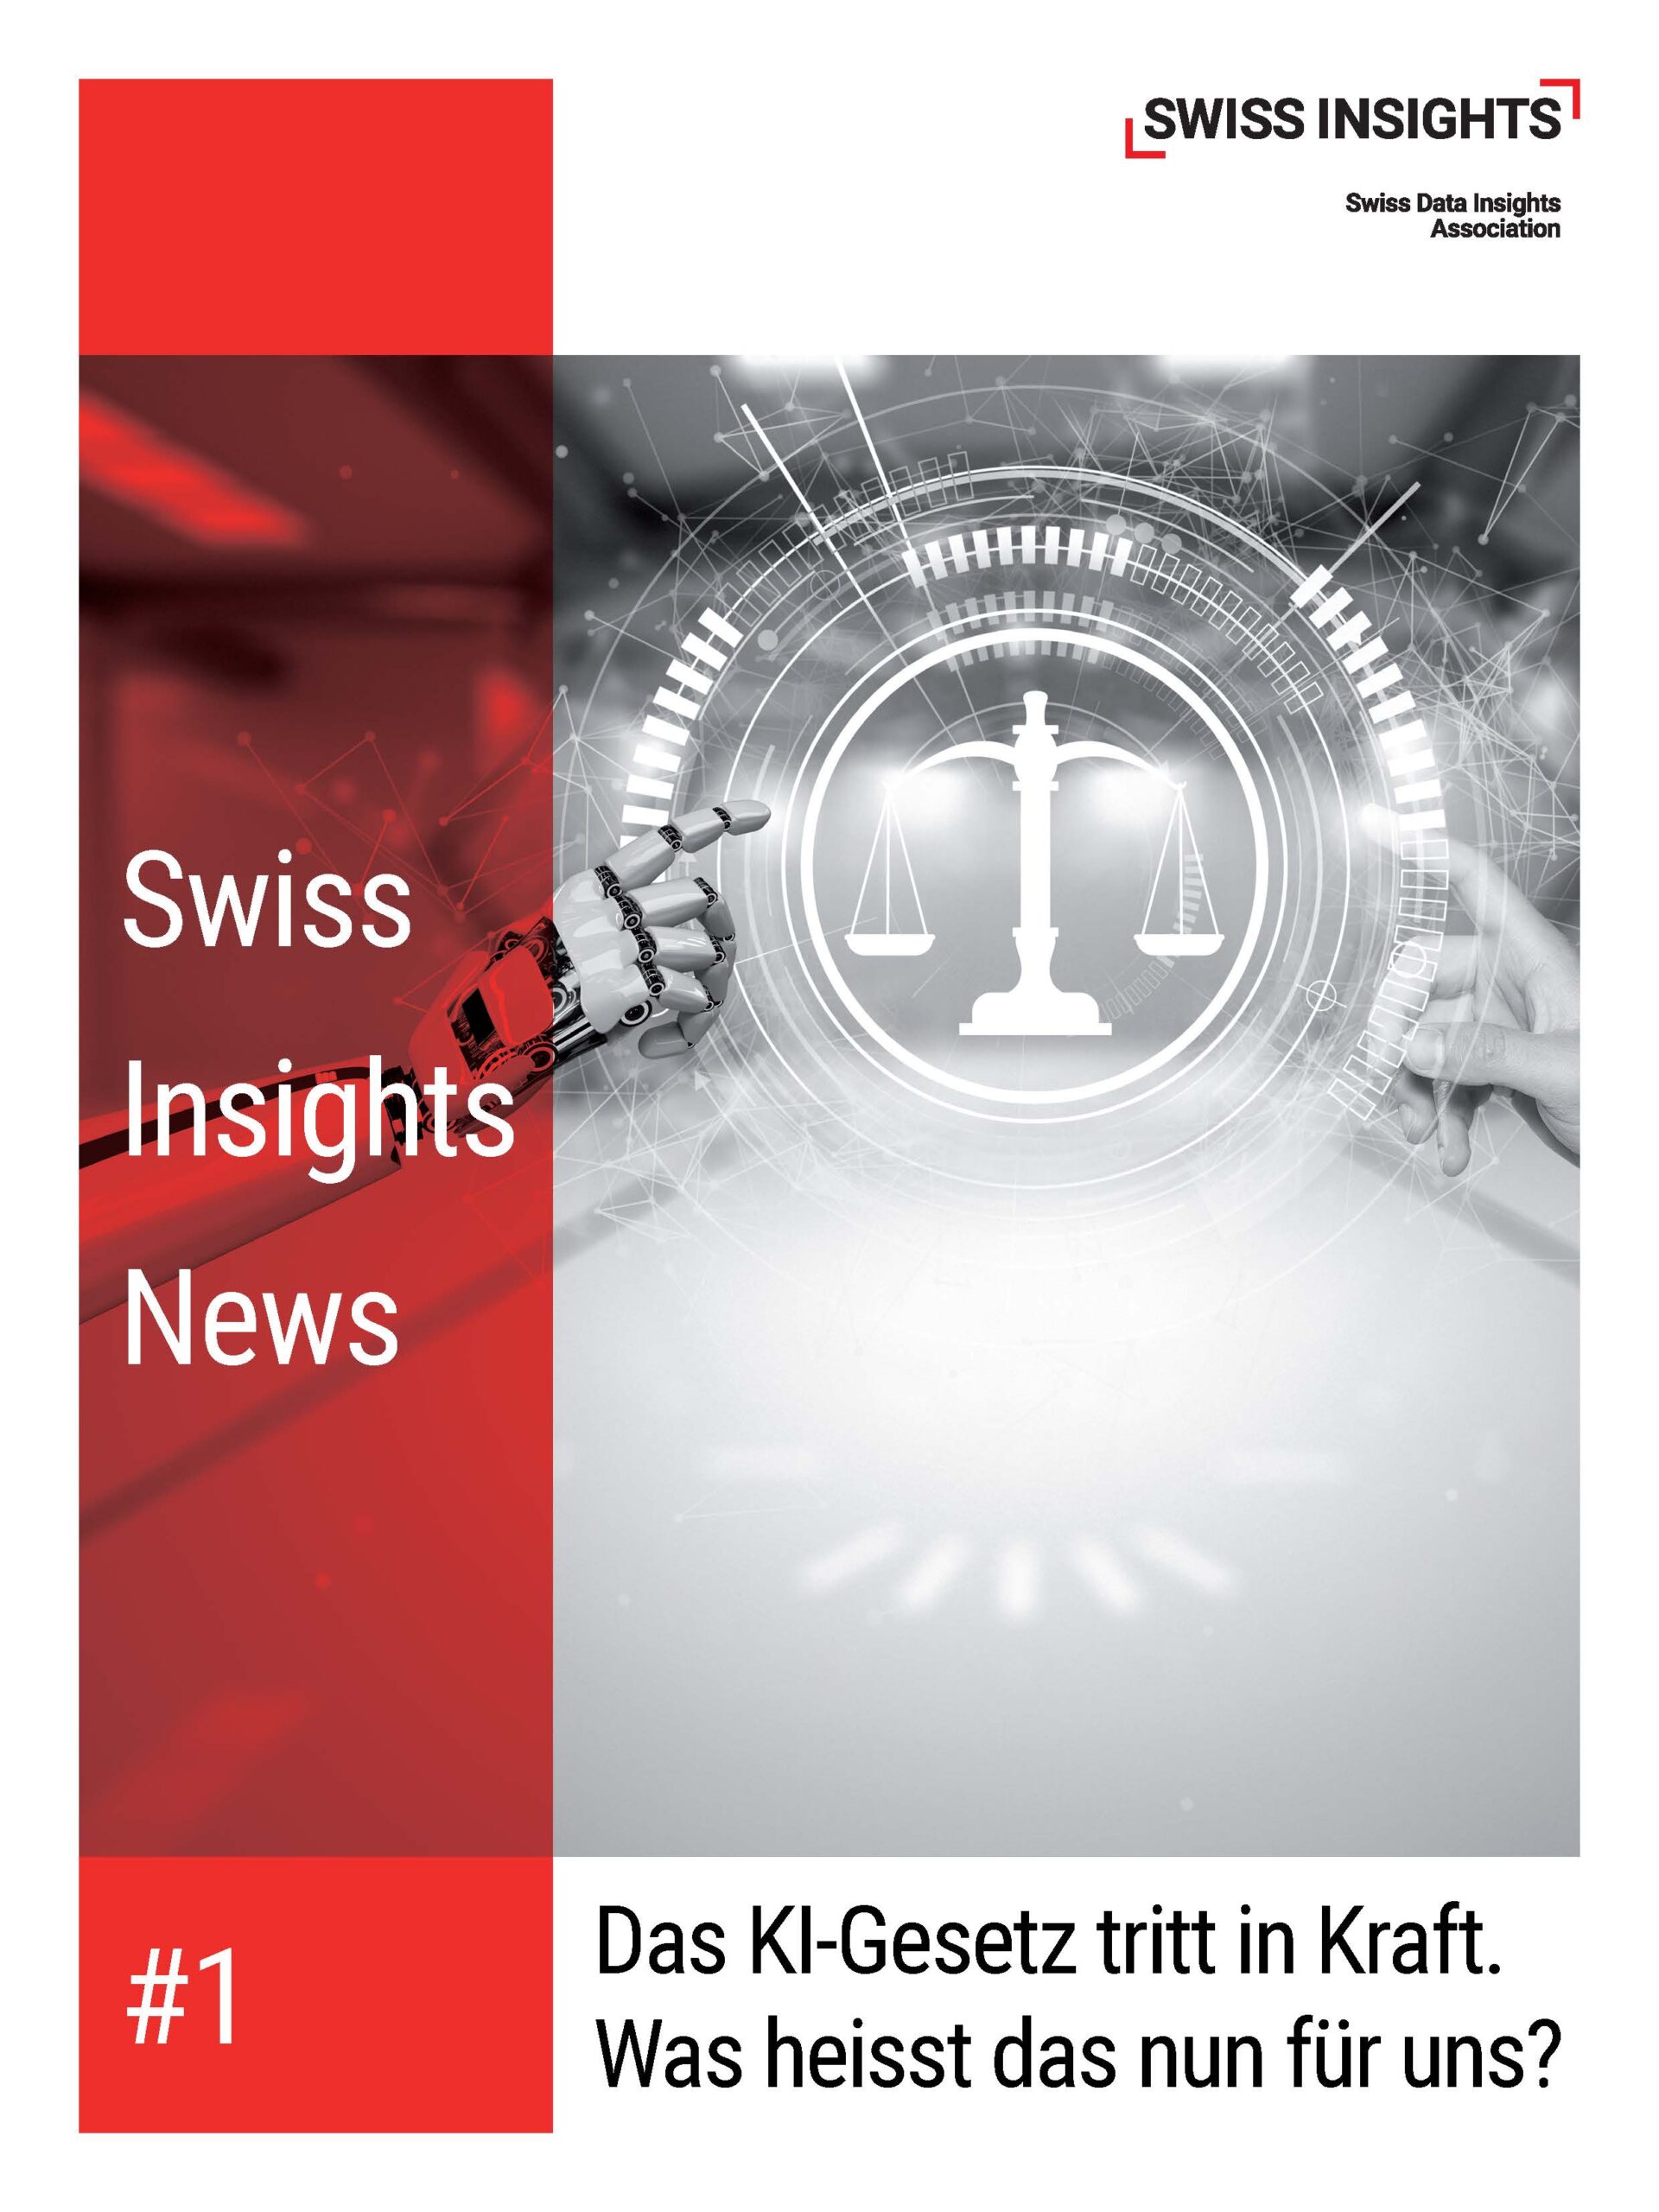 KI-Gesetz tritt in Kraft. Was bedeutet das für Schweizer Unternehmen?